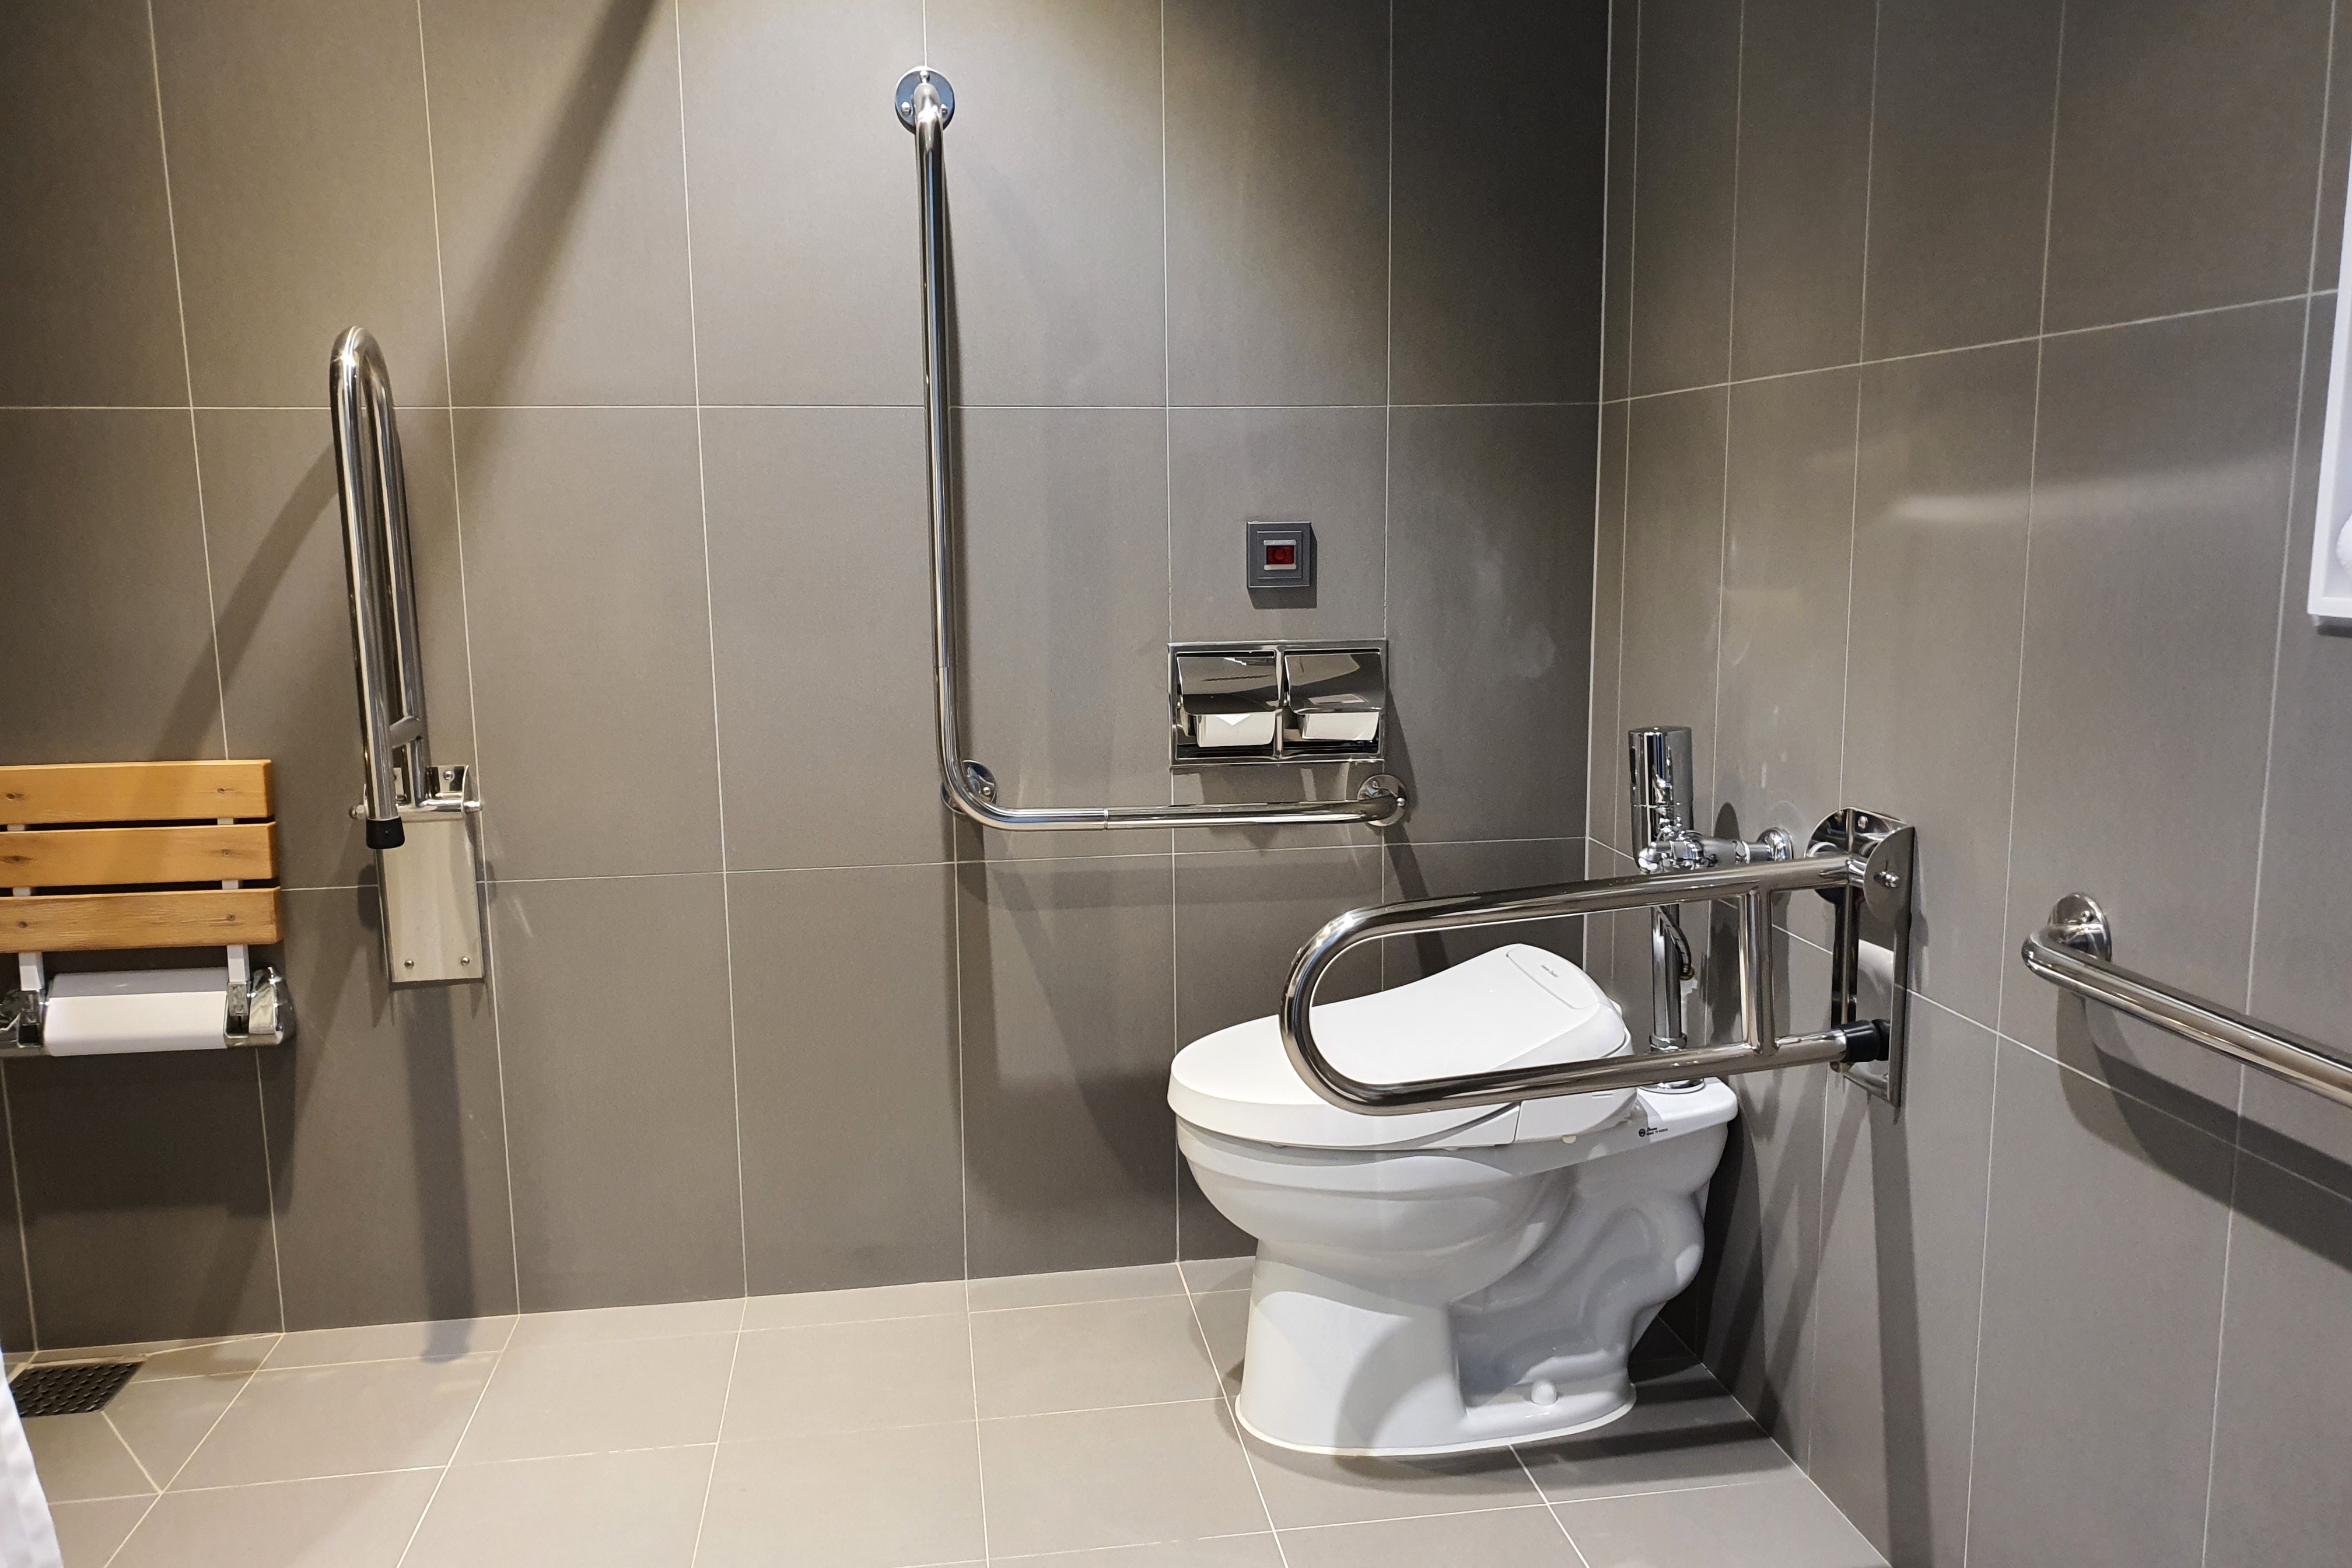 객실 내 화장실0 : 안전 손잡이와 벽걸이형 샤워의자가 설치된 화장실